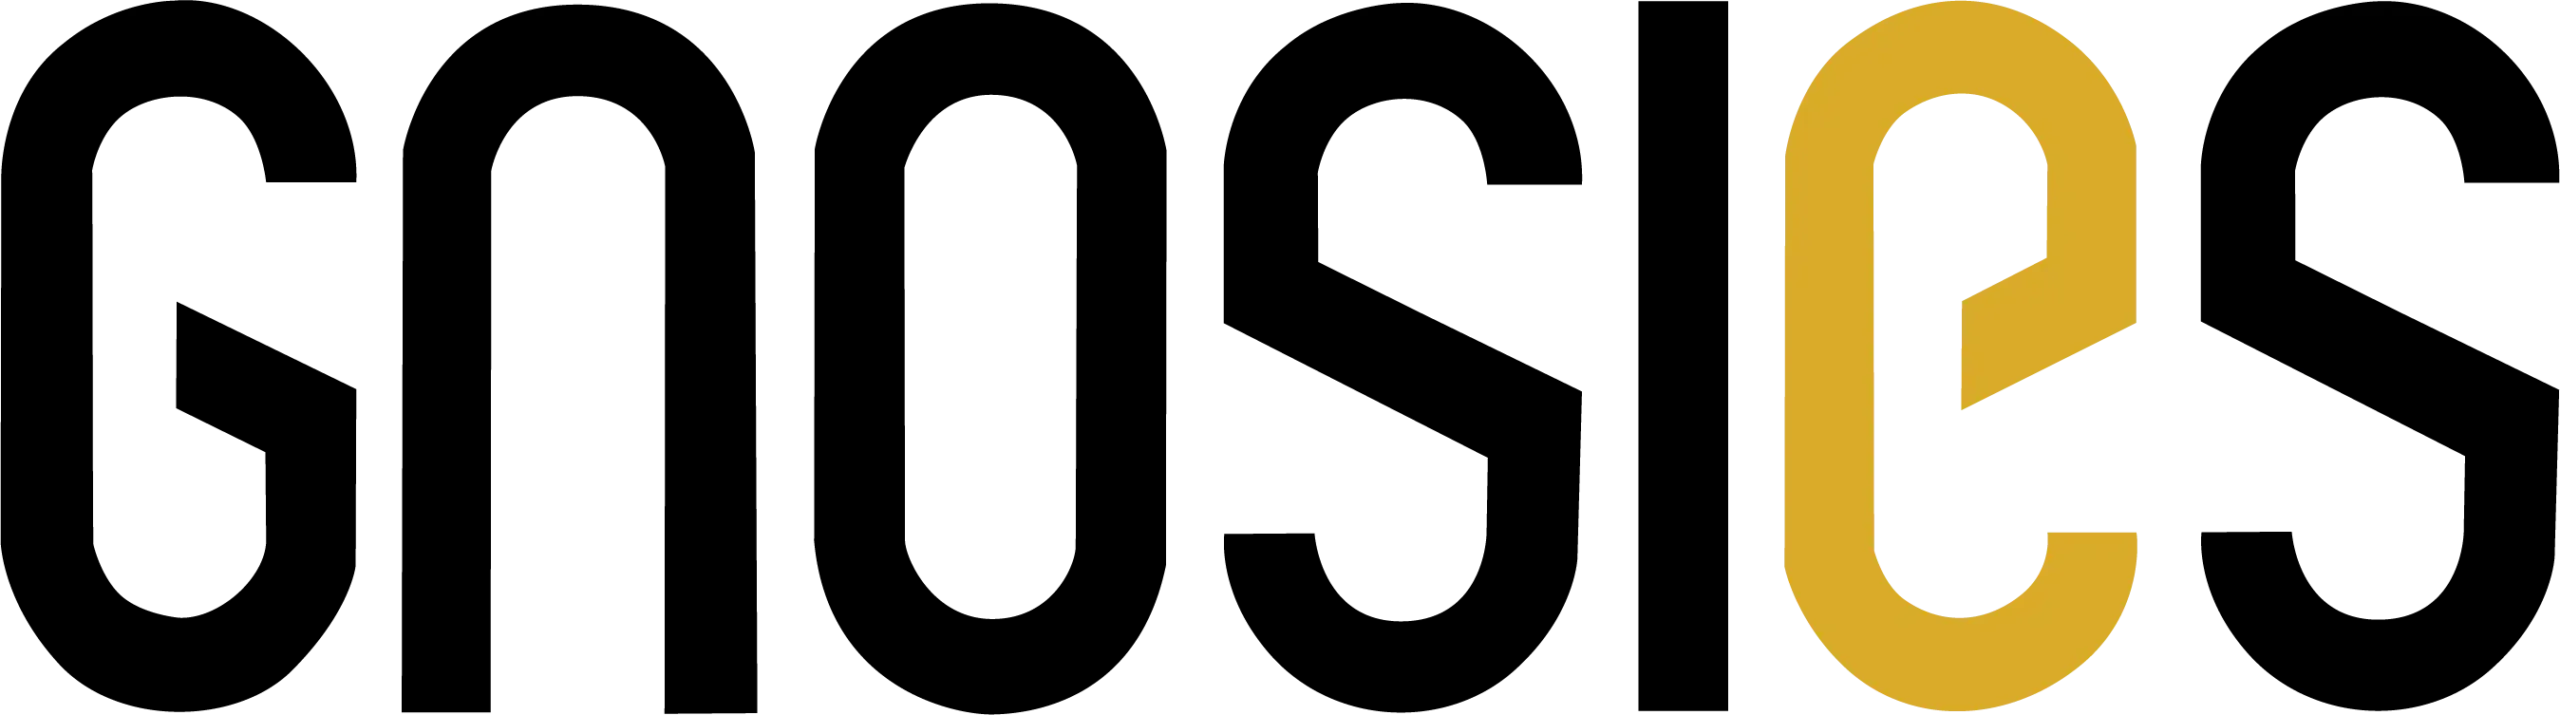 Logo-gnosies-preto